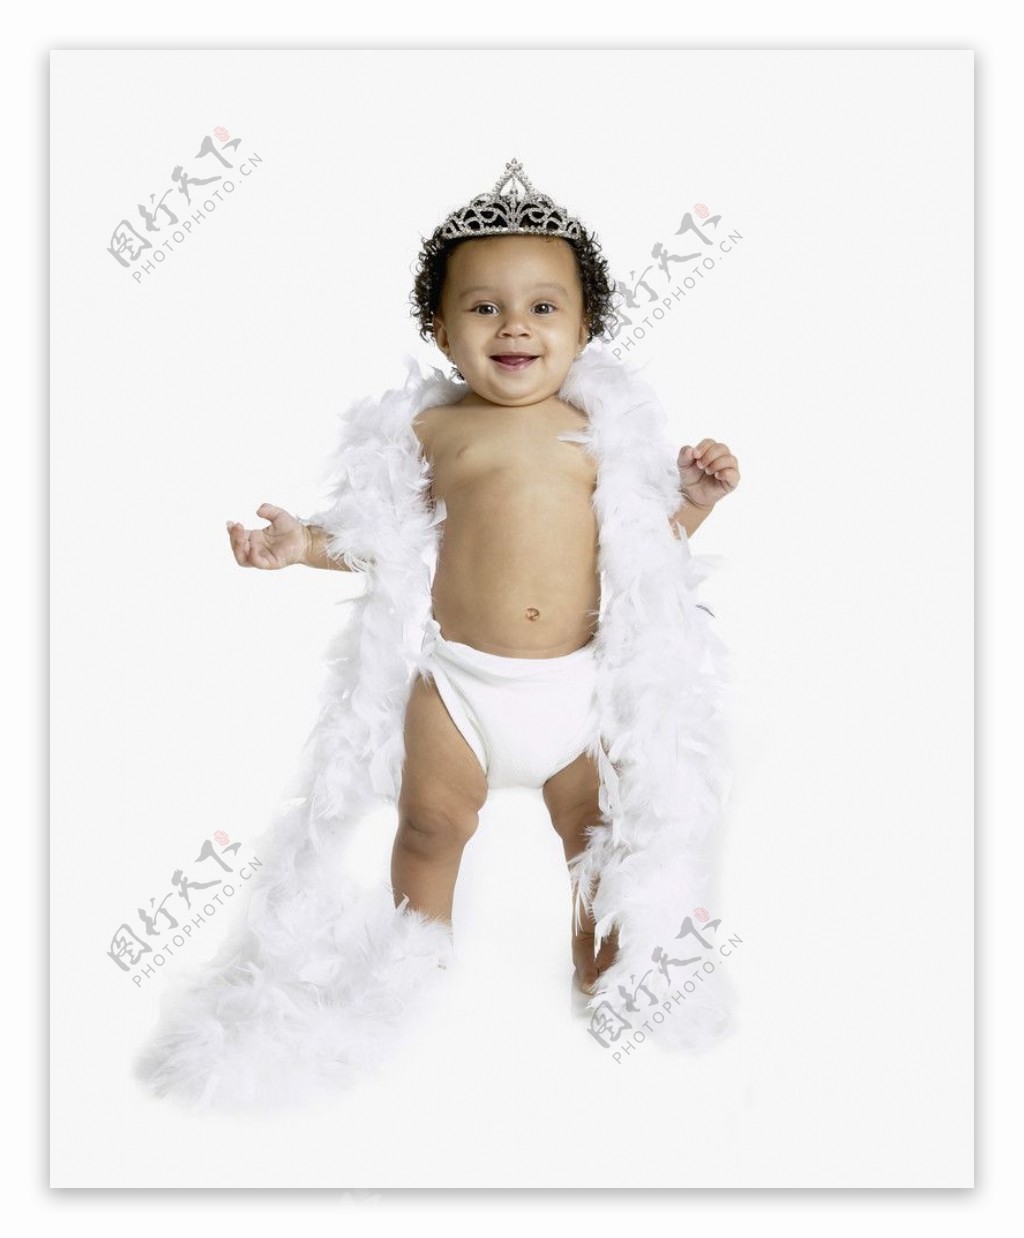 带着羽毛围巾皇冠的宝宝婴儿图片